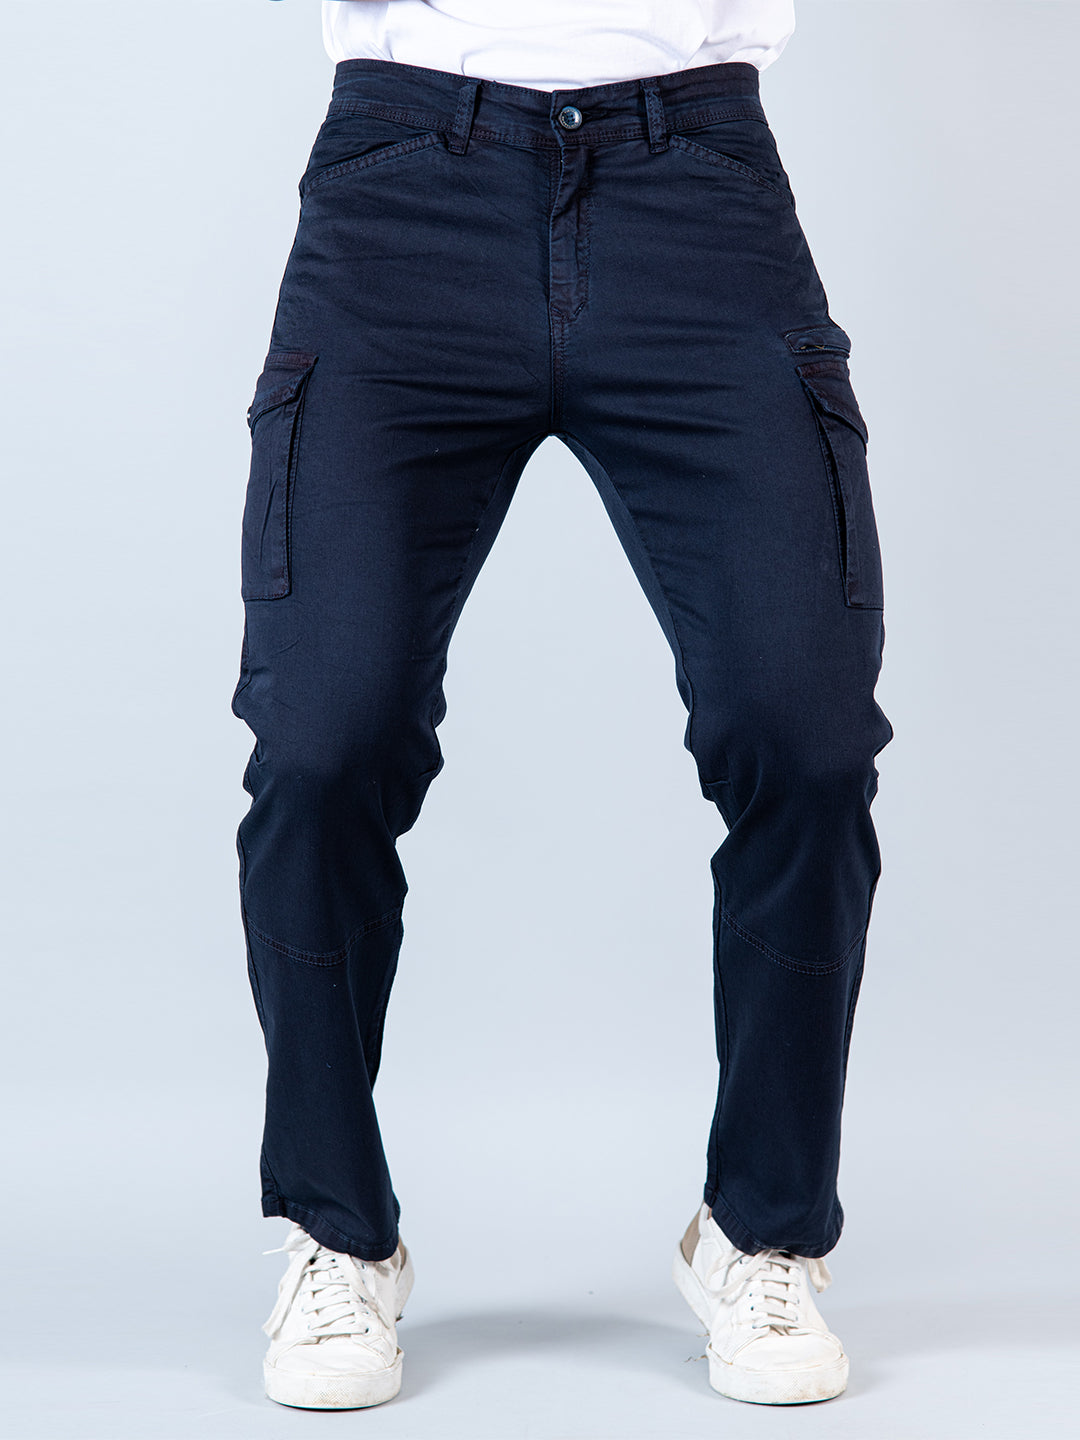 Gap Cargo Pants for Men | Mercari